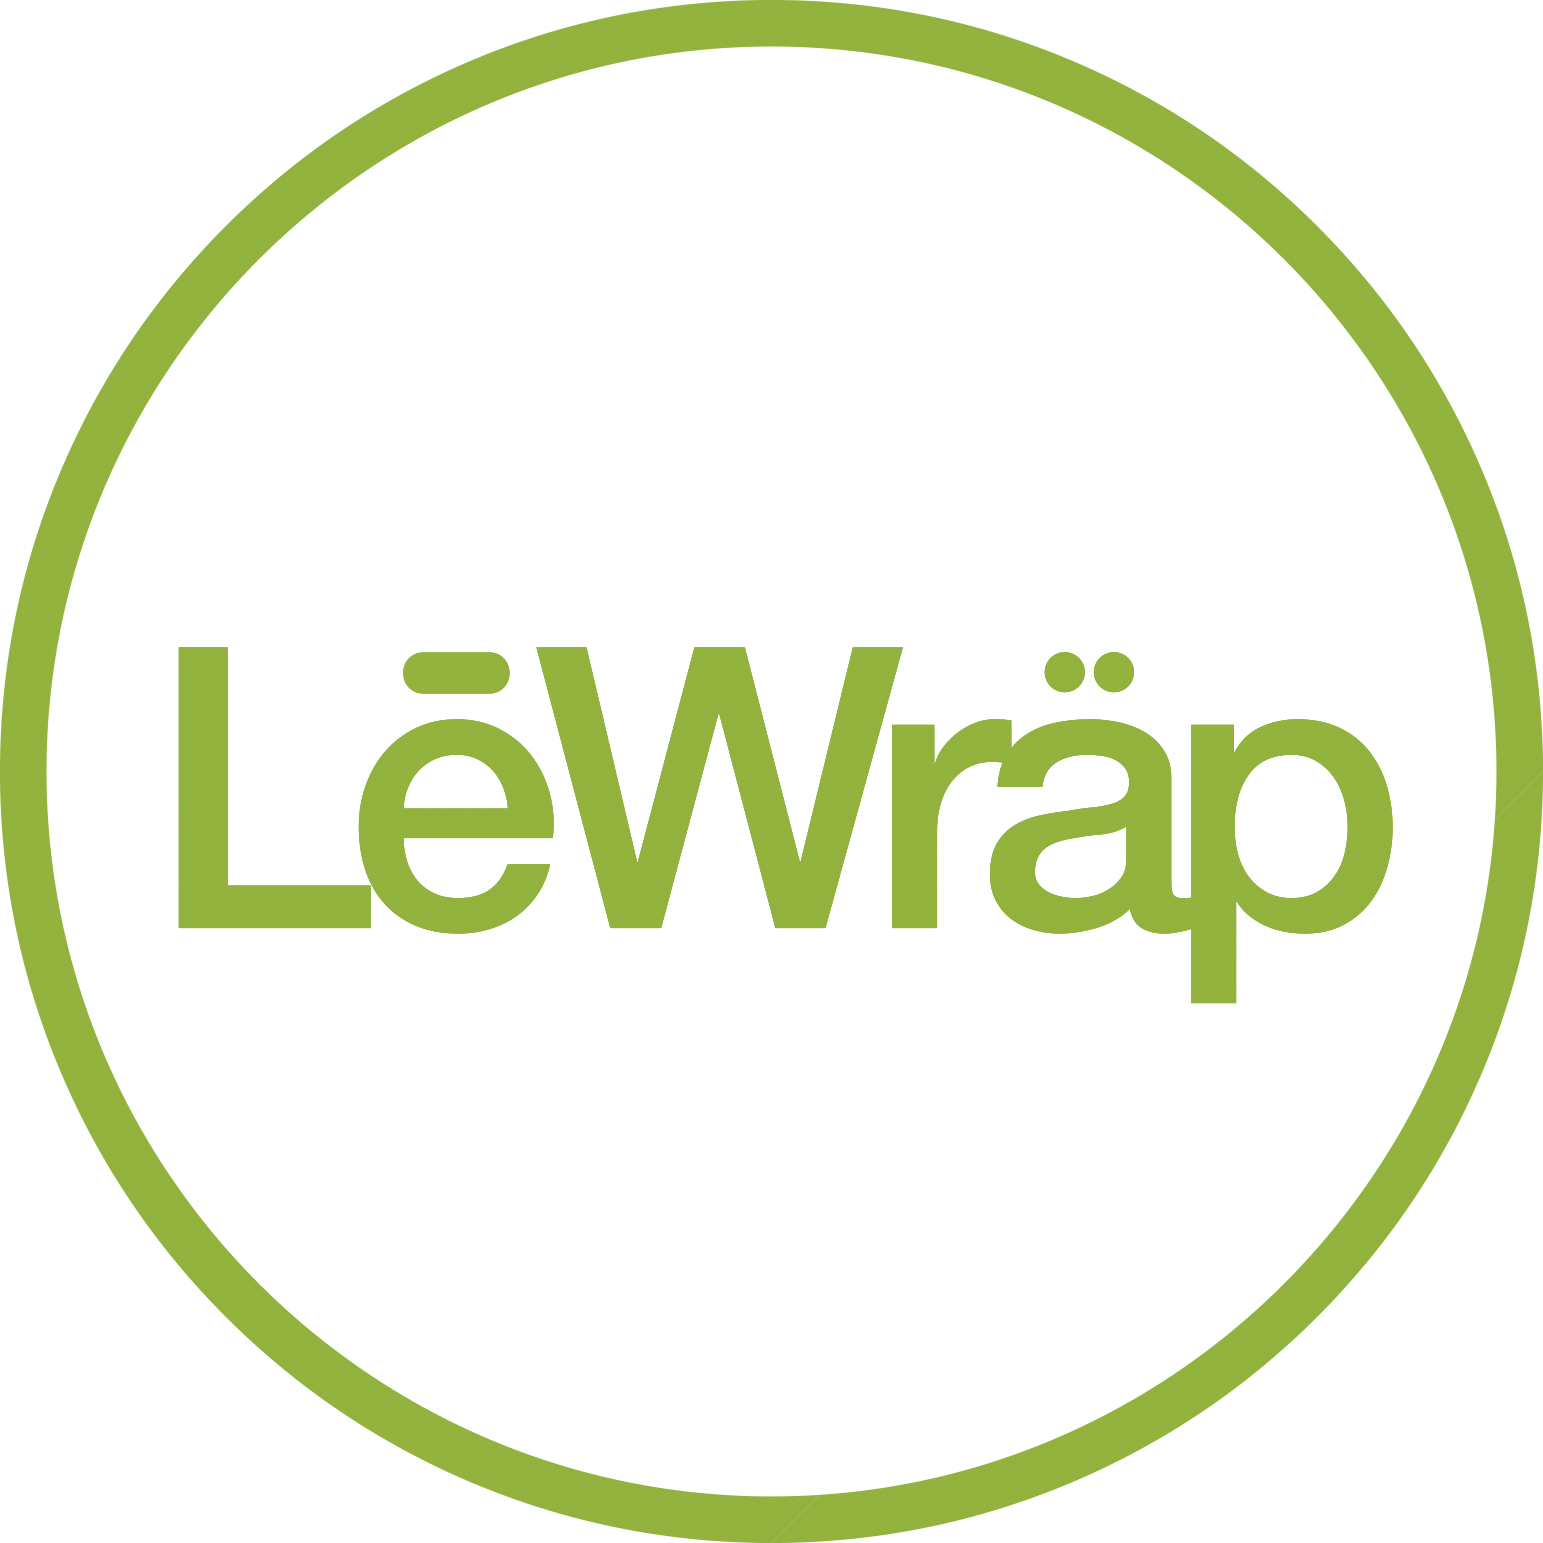 lewrap_logo.png